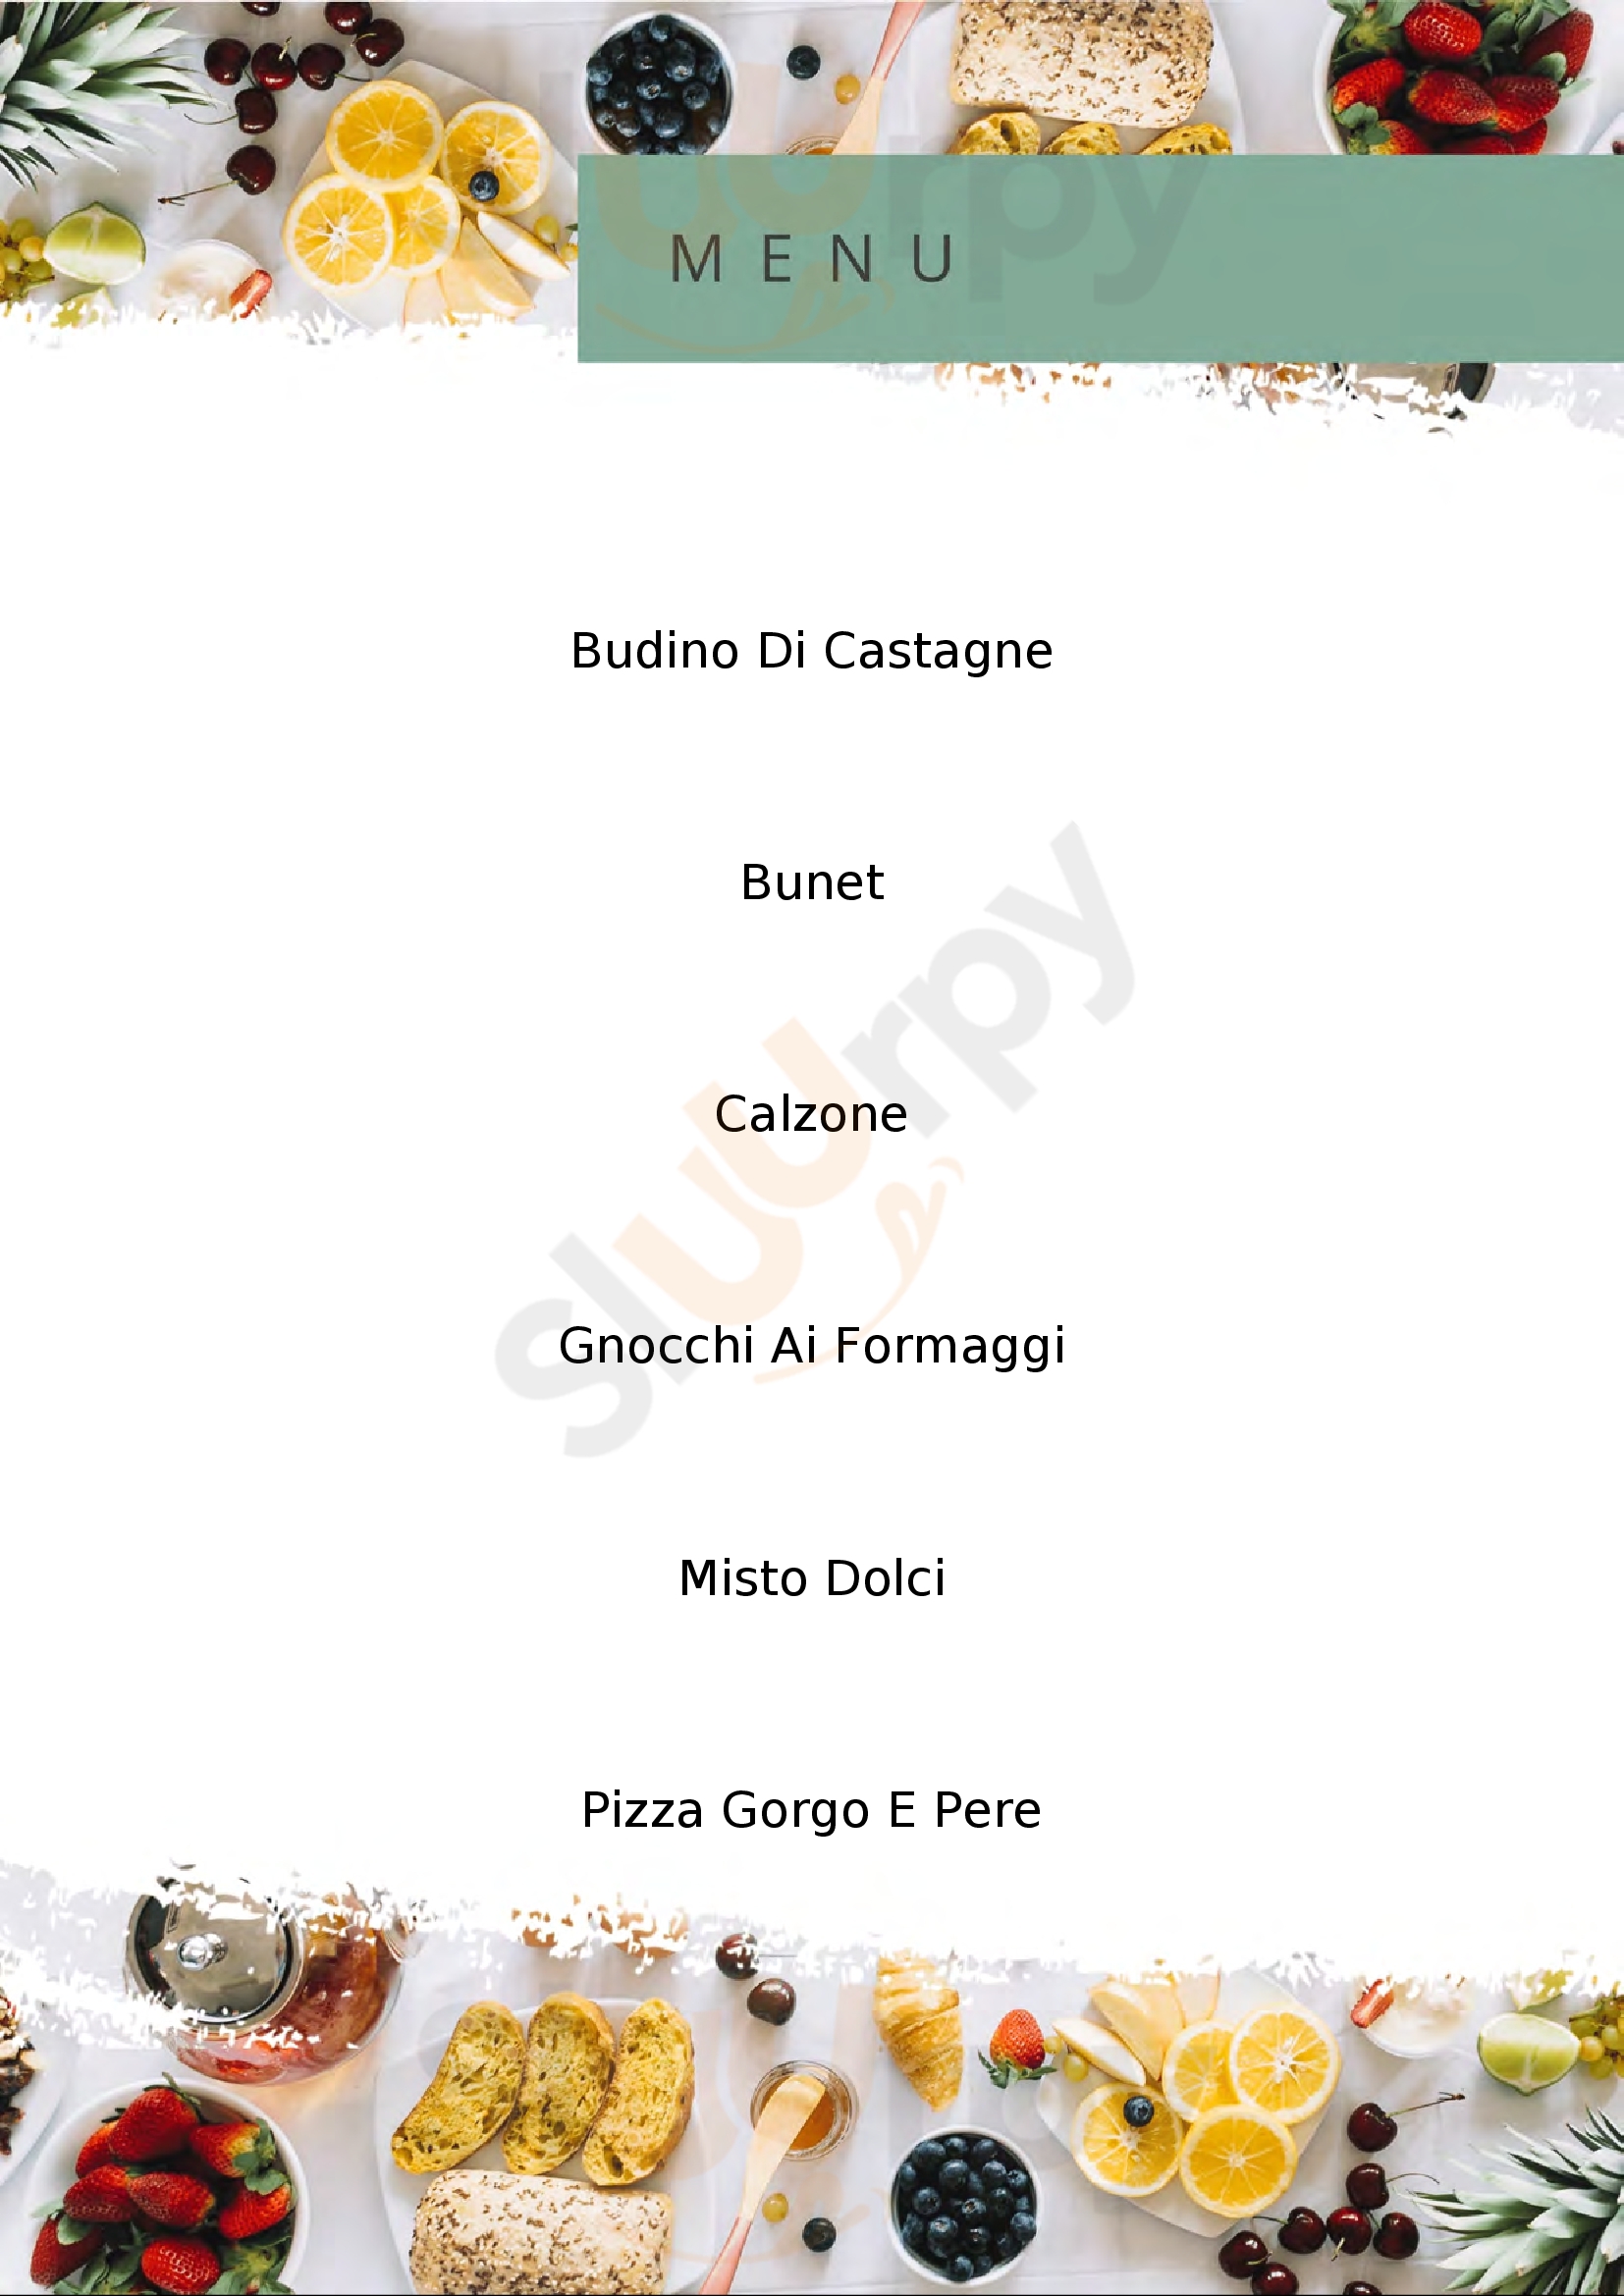 Ristorantino con pizza da Marina Garessio menù 1 pagina